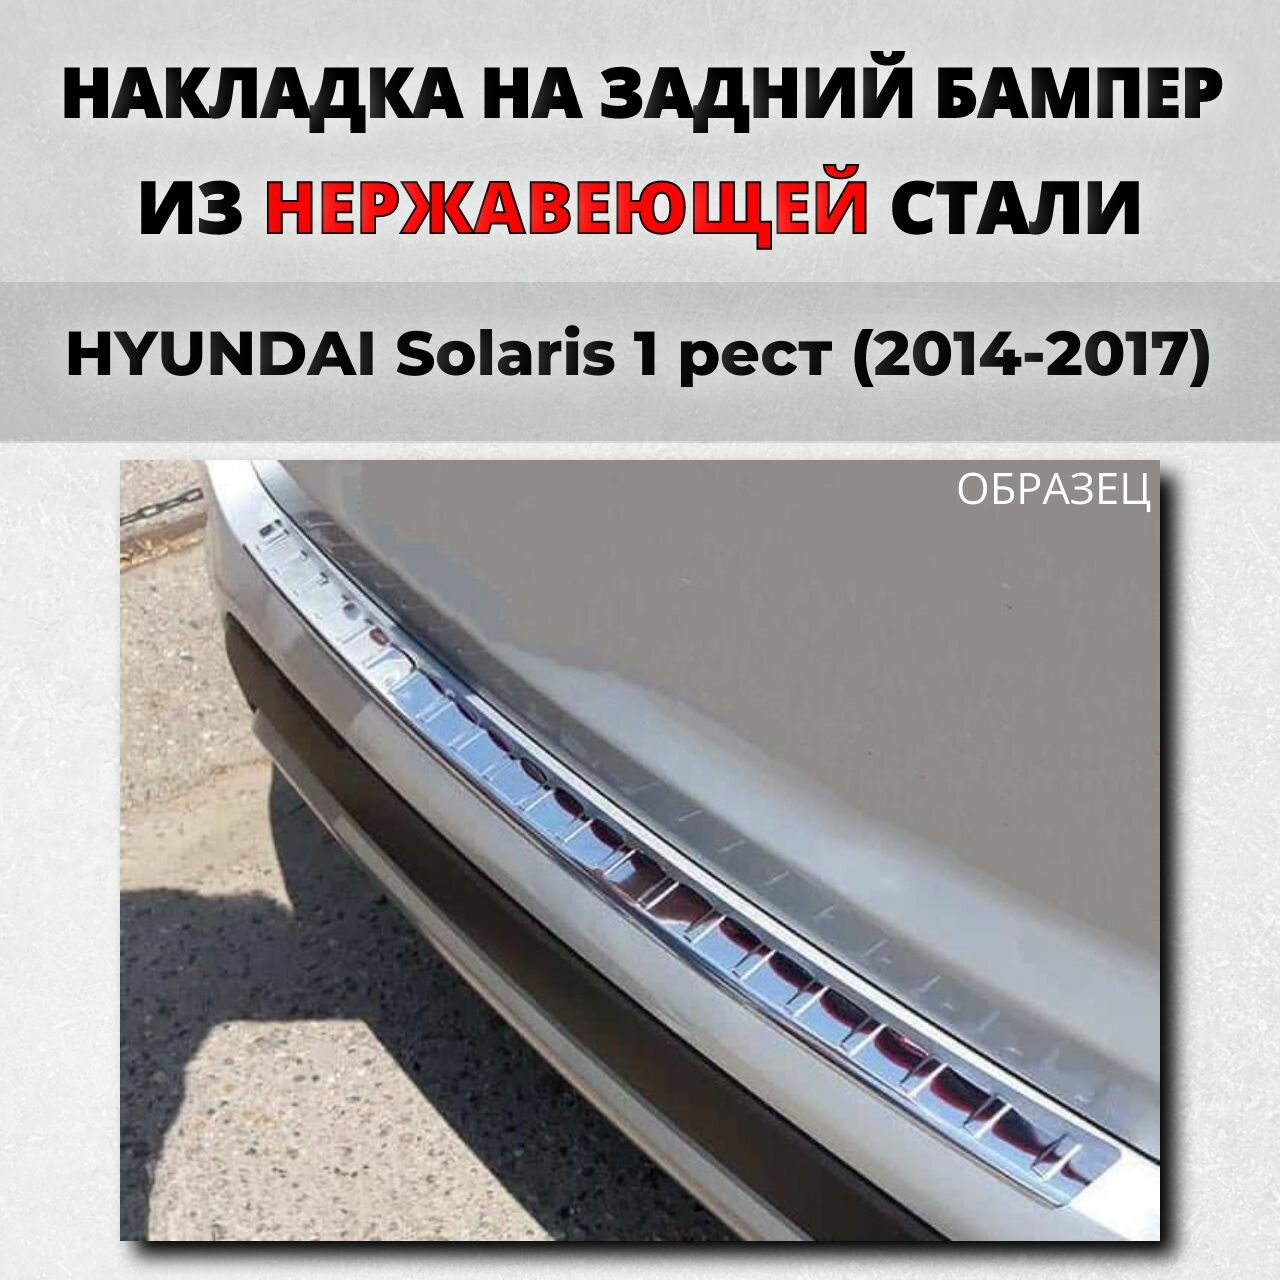 Накладка на задний бампер Хендай Солярис седан 1 рейстайлнг 2014-2017 с загибом нерж. сталь / защита бампера HYUNDAI Solaris